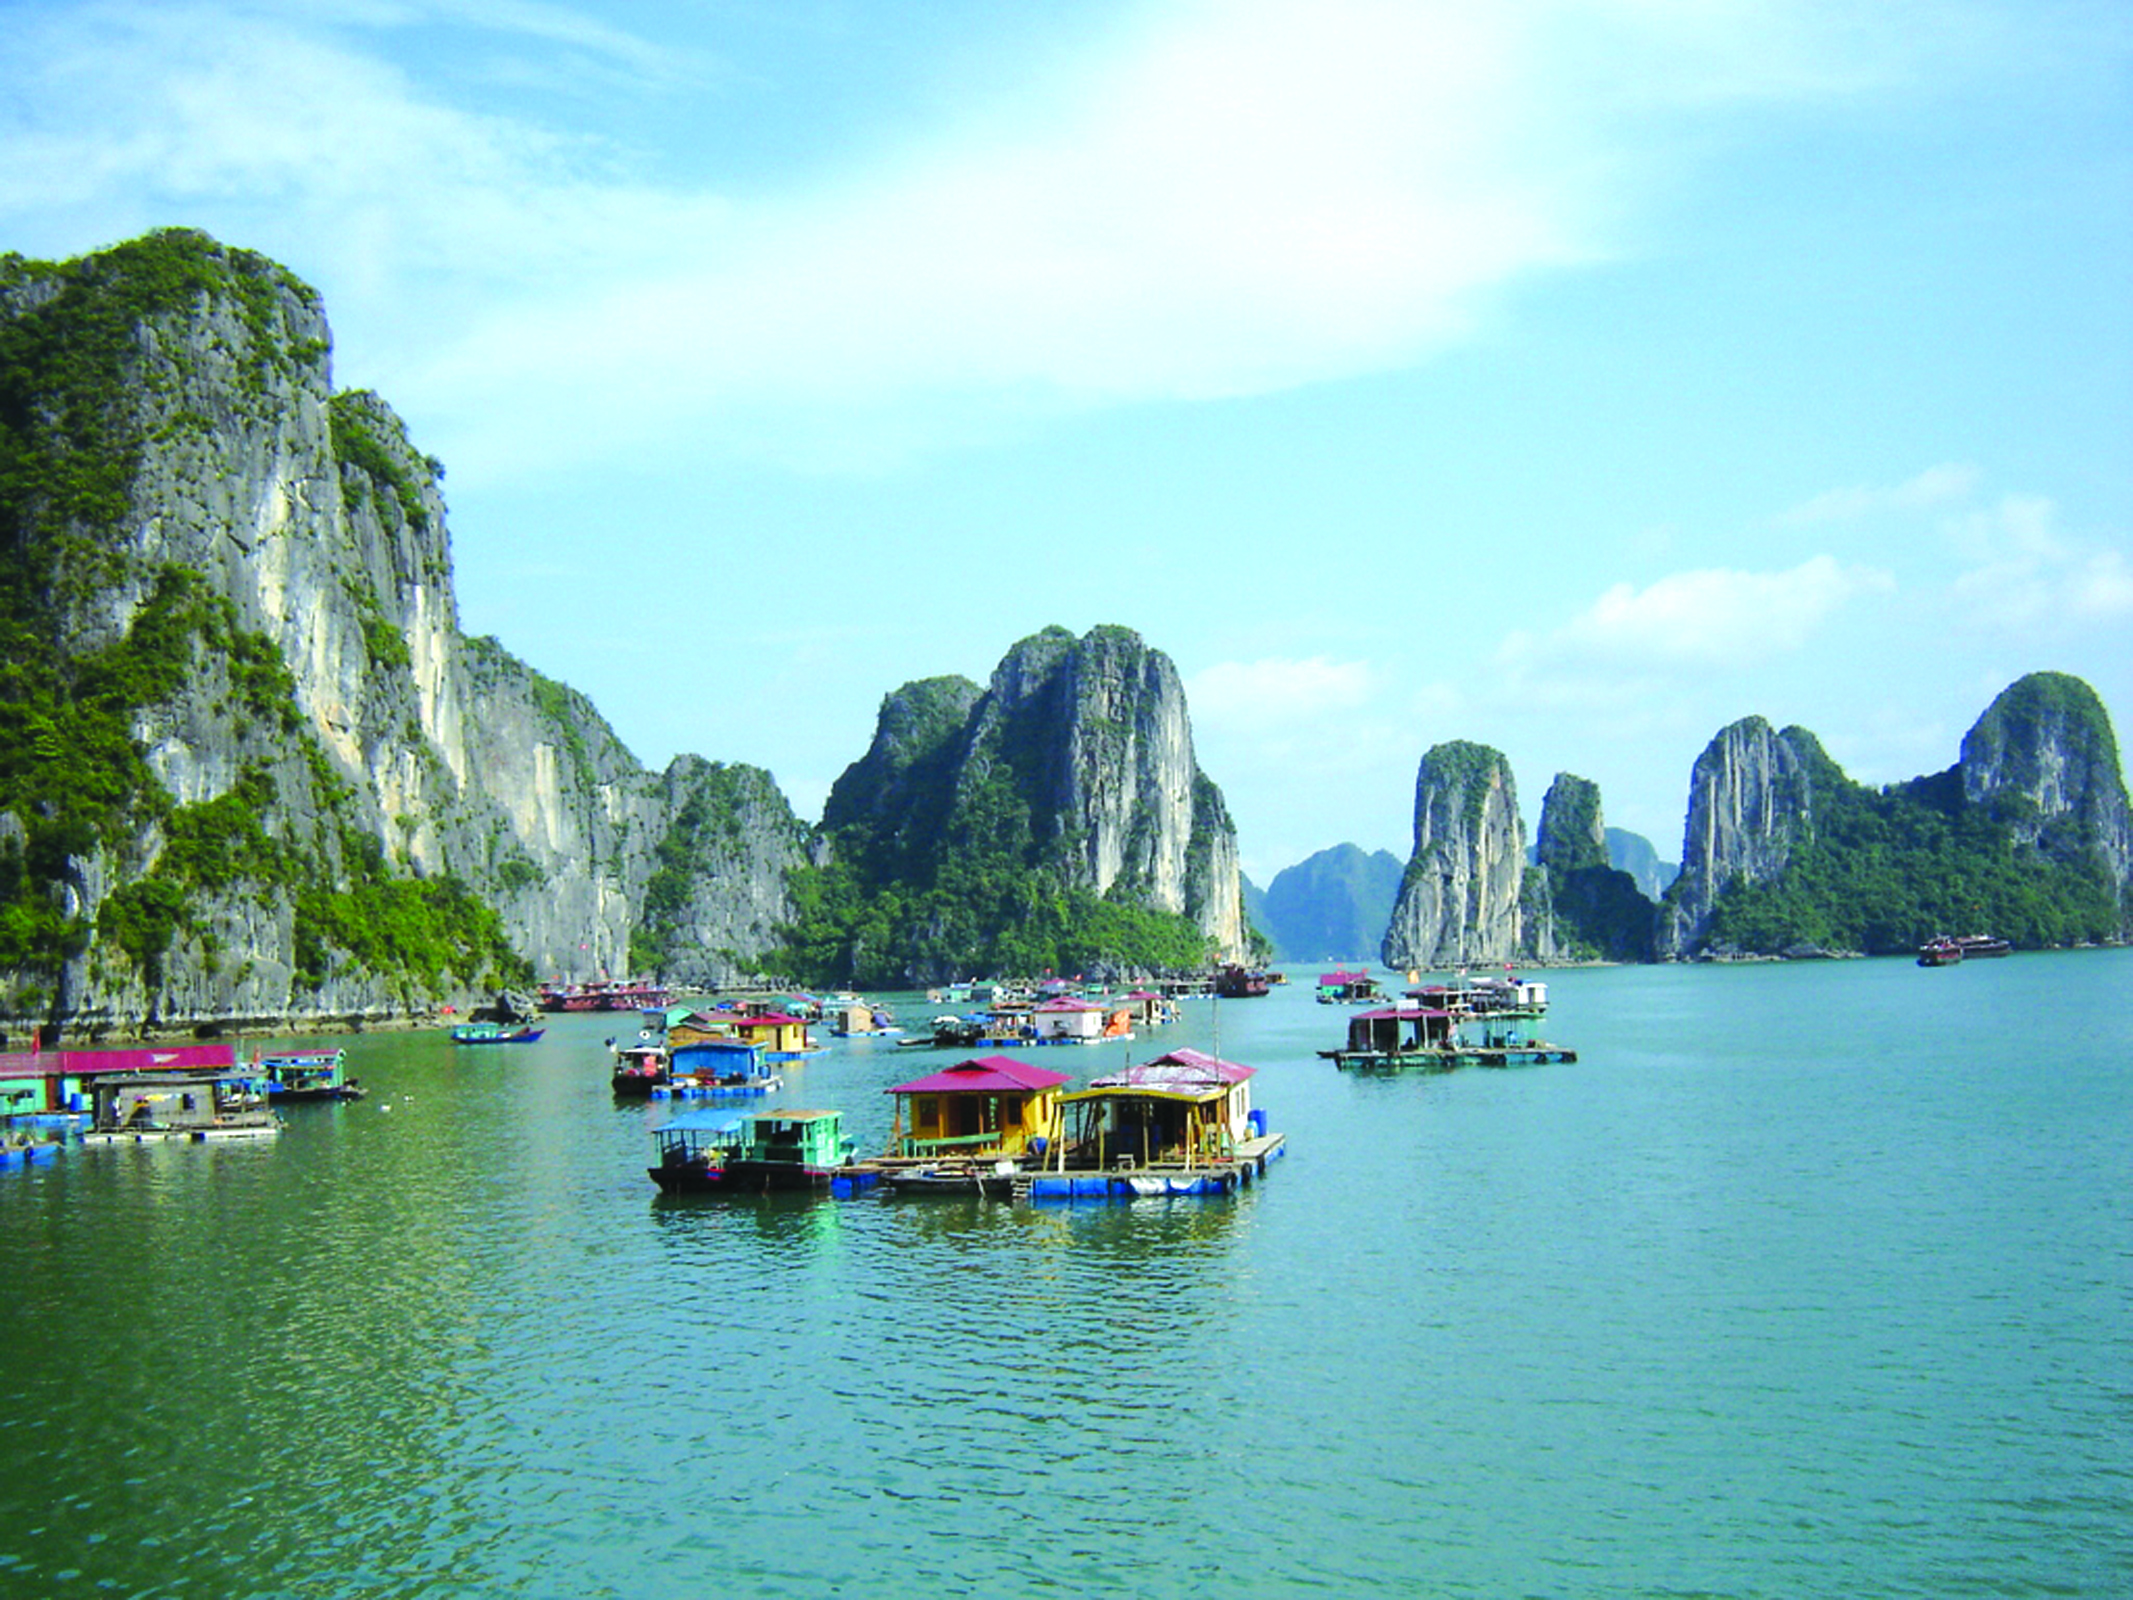 Việt Nam đẹp đến mức nào? Chuyến du lịch Việt đẹp sẽ giúp bạn trả lời câu hỏi đó. Từ những bãi đảo trắng tinh, đến những con hẻm nhỏ, đường phố đông đúc, Việt Nam sẽ làm say đắm lòng người.